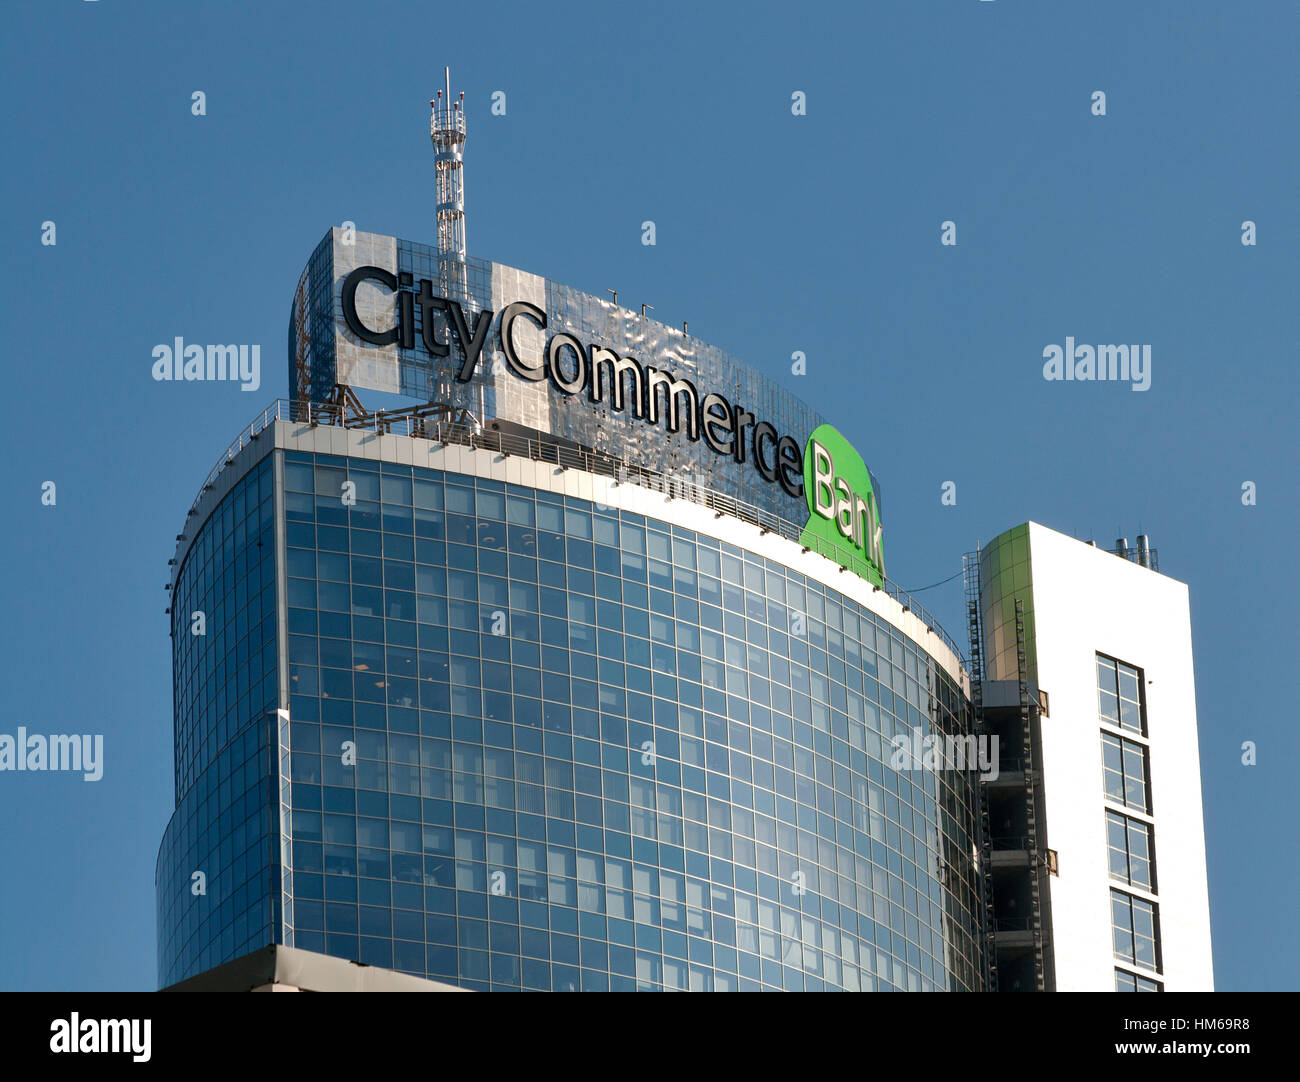 KIEV, UKRAINE - le 22 octobre : Ville Commerce Bank publicité rejoignez sur le dessus de l'immeuble de bureaux moderne le 22 octobre 2012 à Kiev, Ukraine. Banque mondiale avec pré Banque D'Images